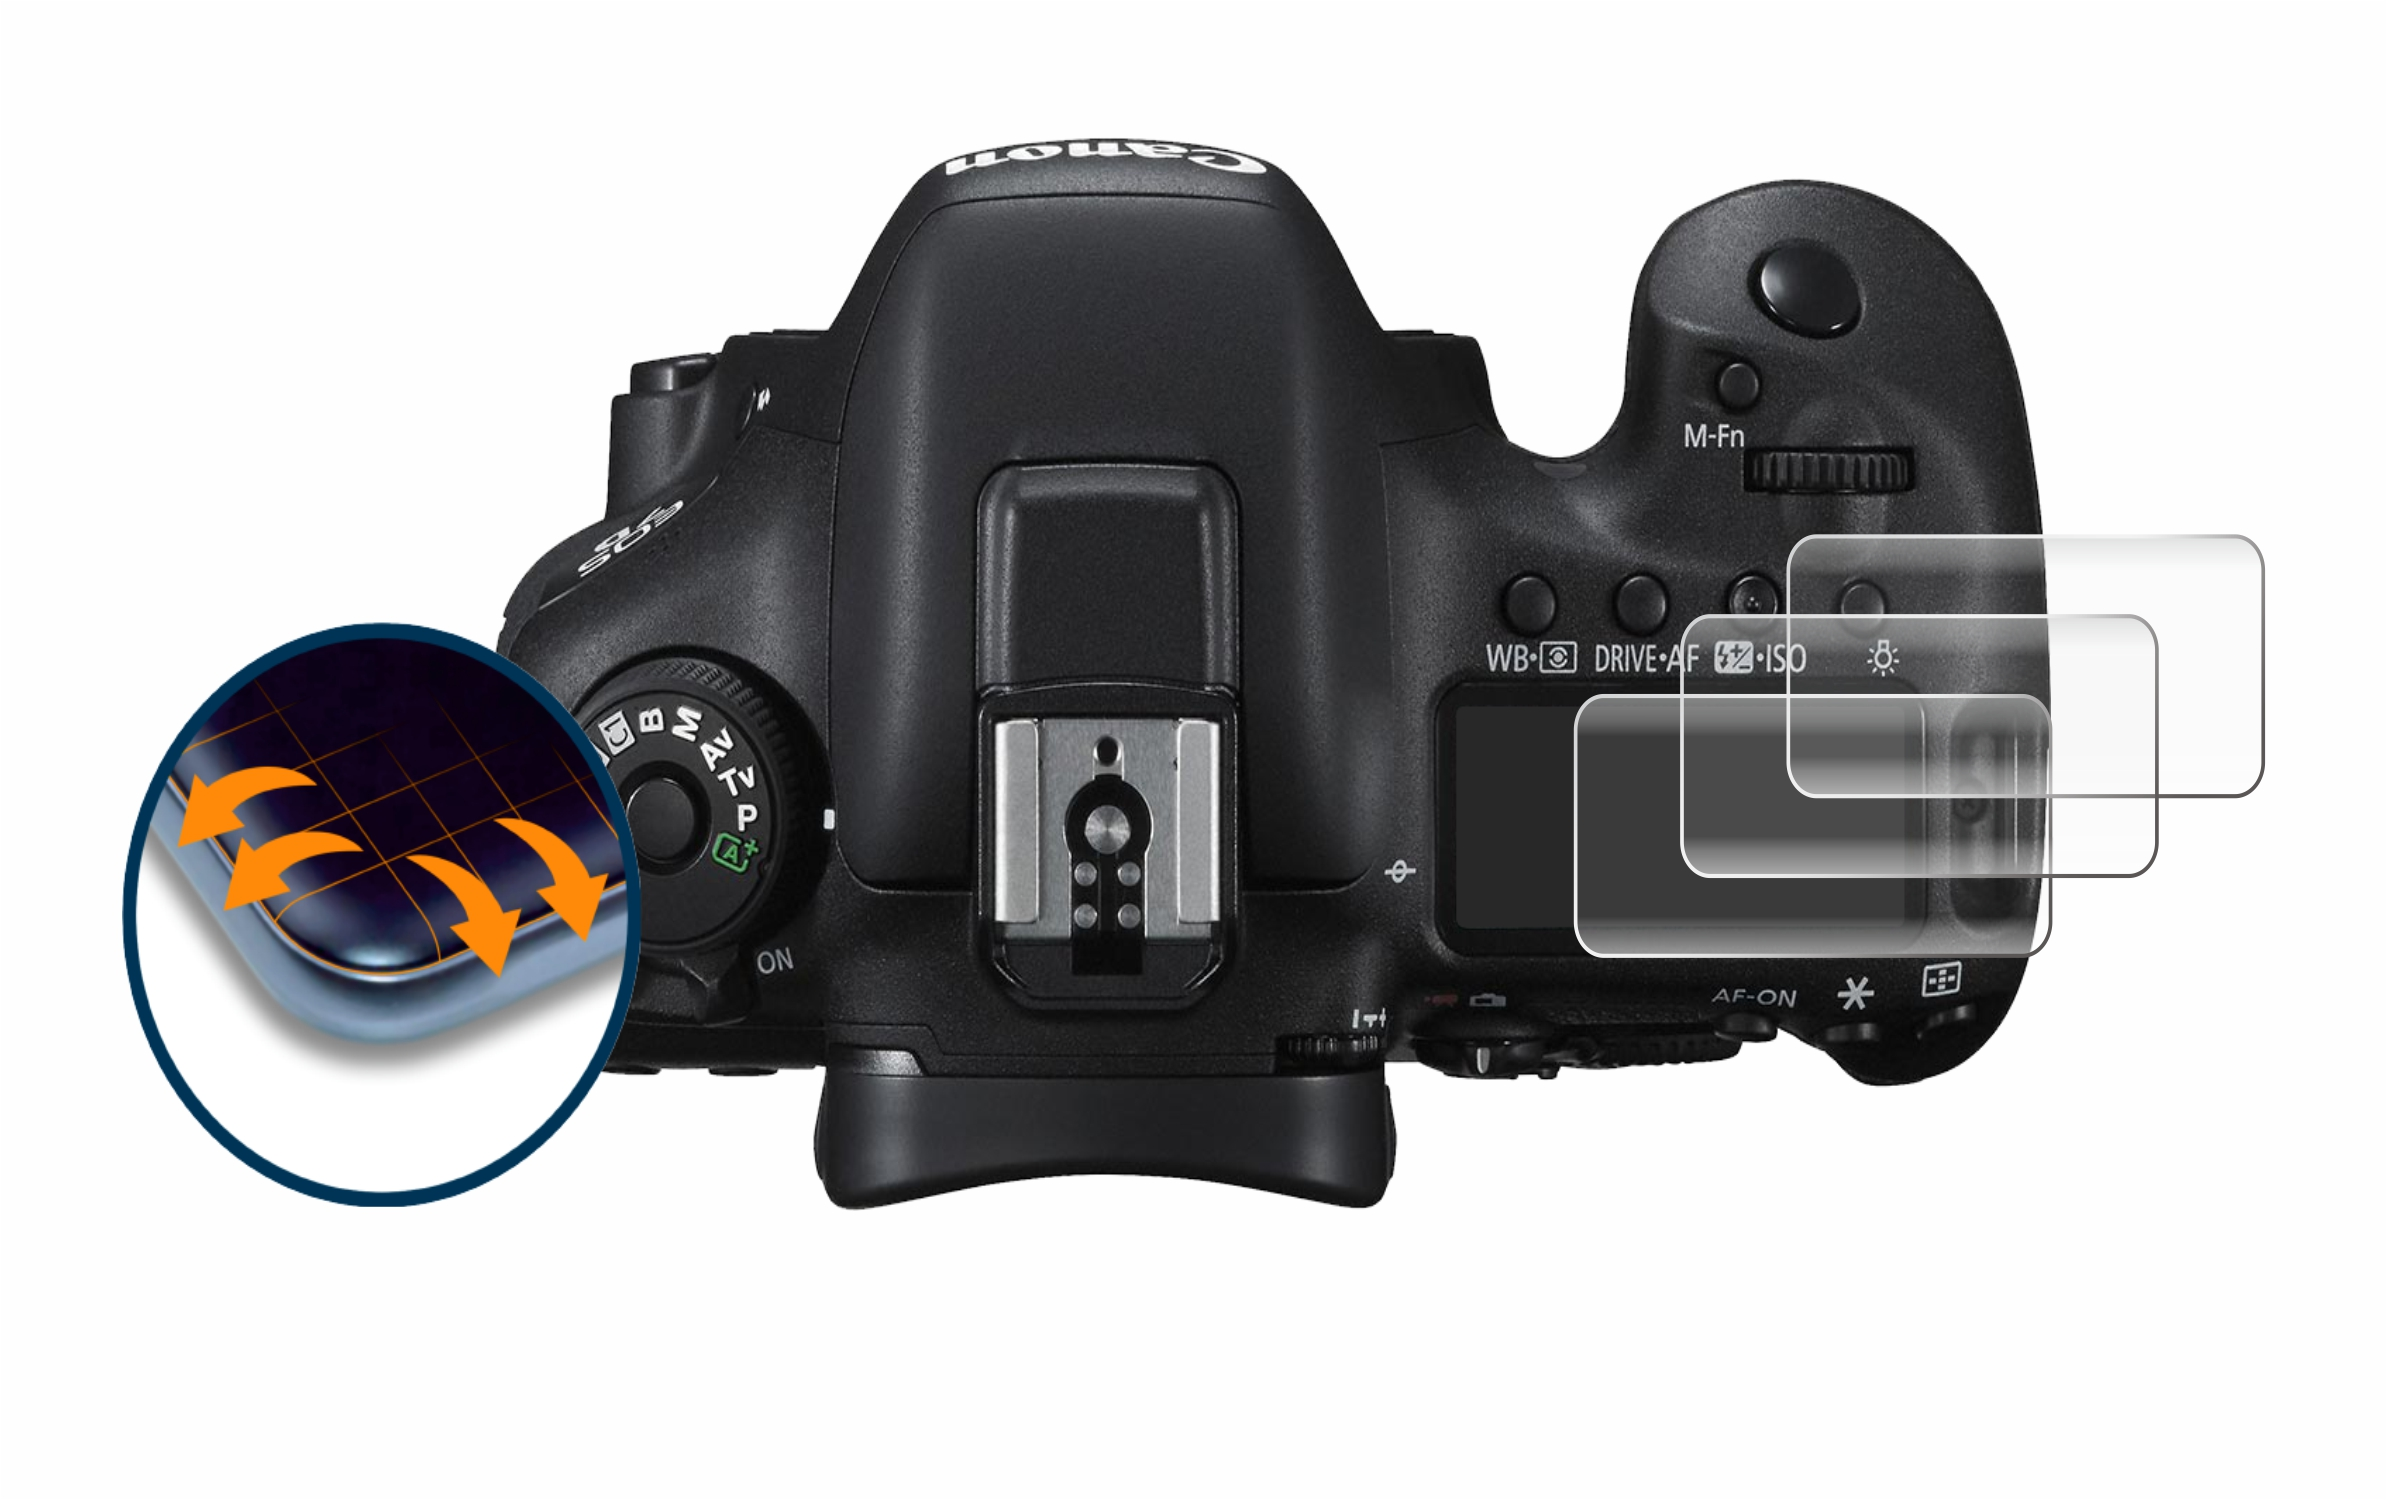 SAVVIES 4x 3D Full-Cover Flex II Canon Curved (Schulterdisplay)) Schutzfolie(für EOS Mark 7D